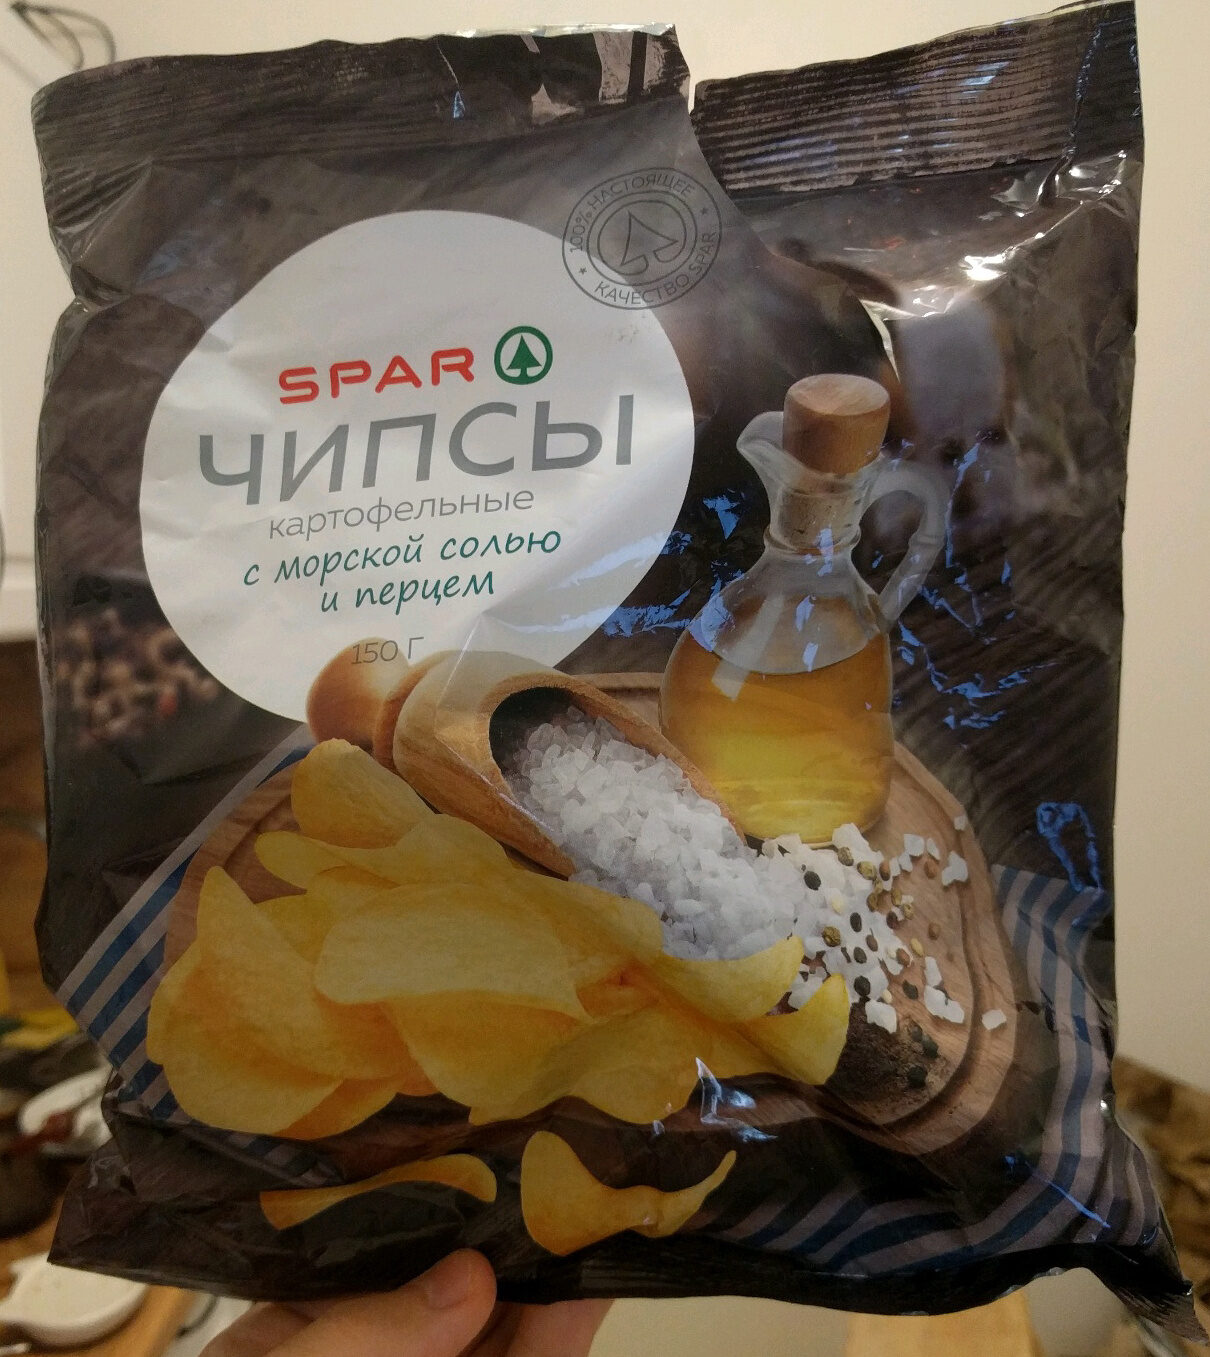 Чипсы картофельные с морской солью и перцем - Product - ru